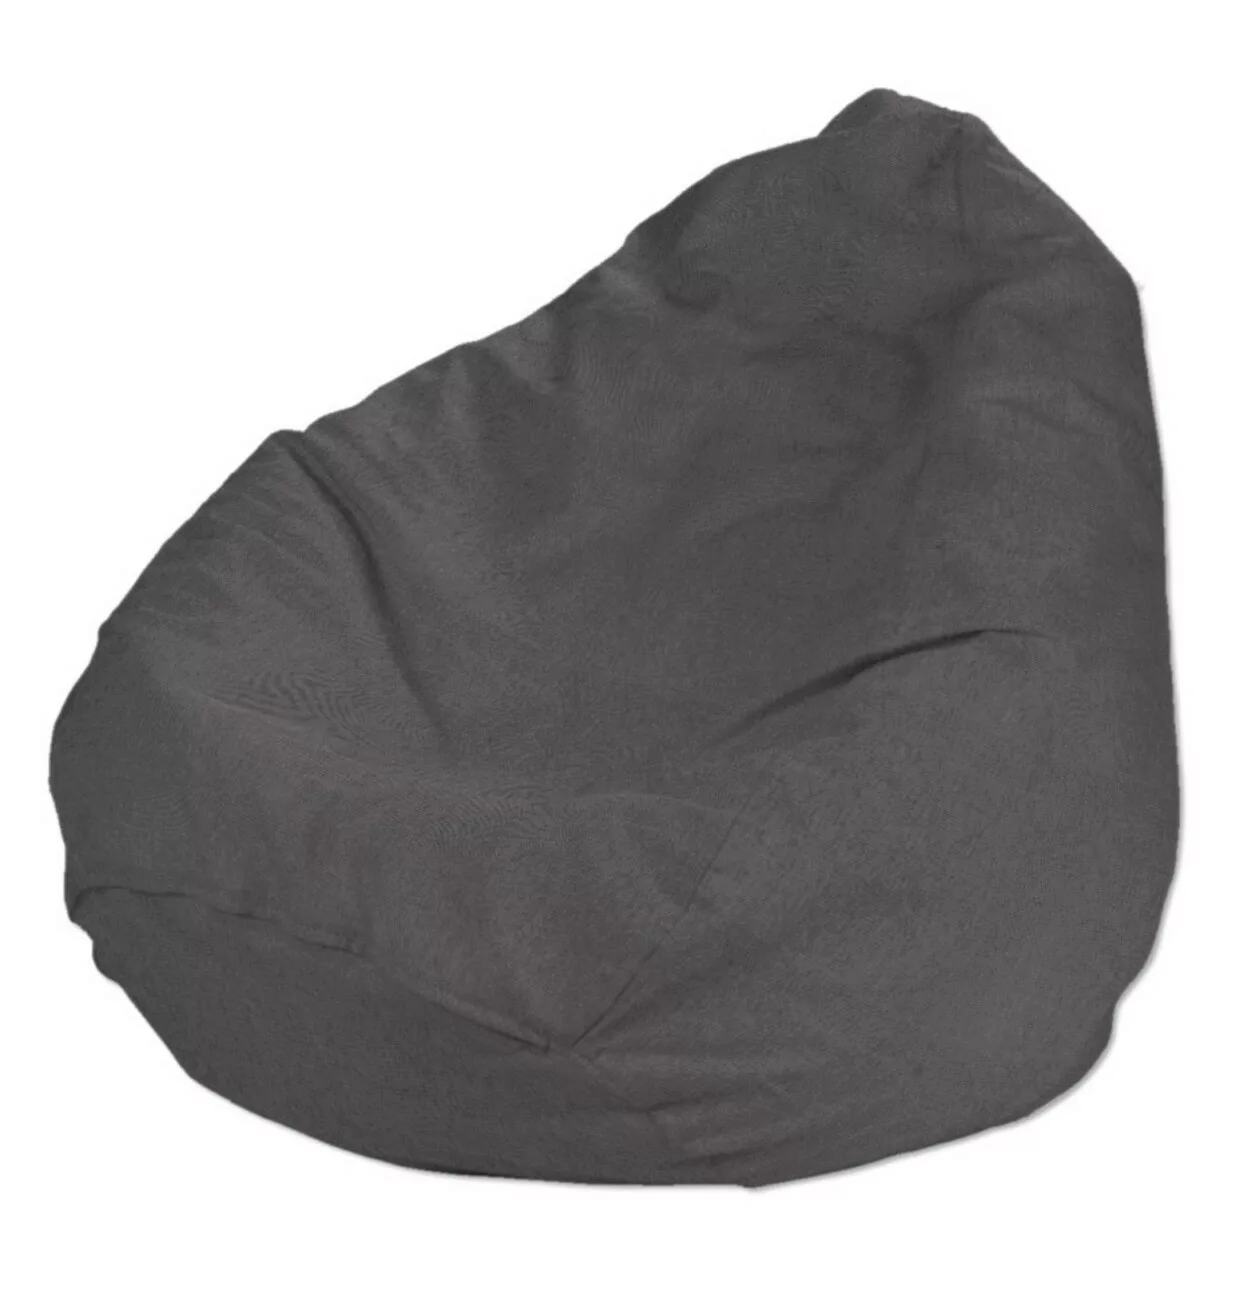 Bezug für Sitzsack, dunkelgrau, Bezug für Sitzsack Ø50 x 85 cm, Etna (705-3 günstig online kaufen